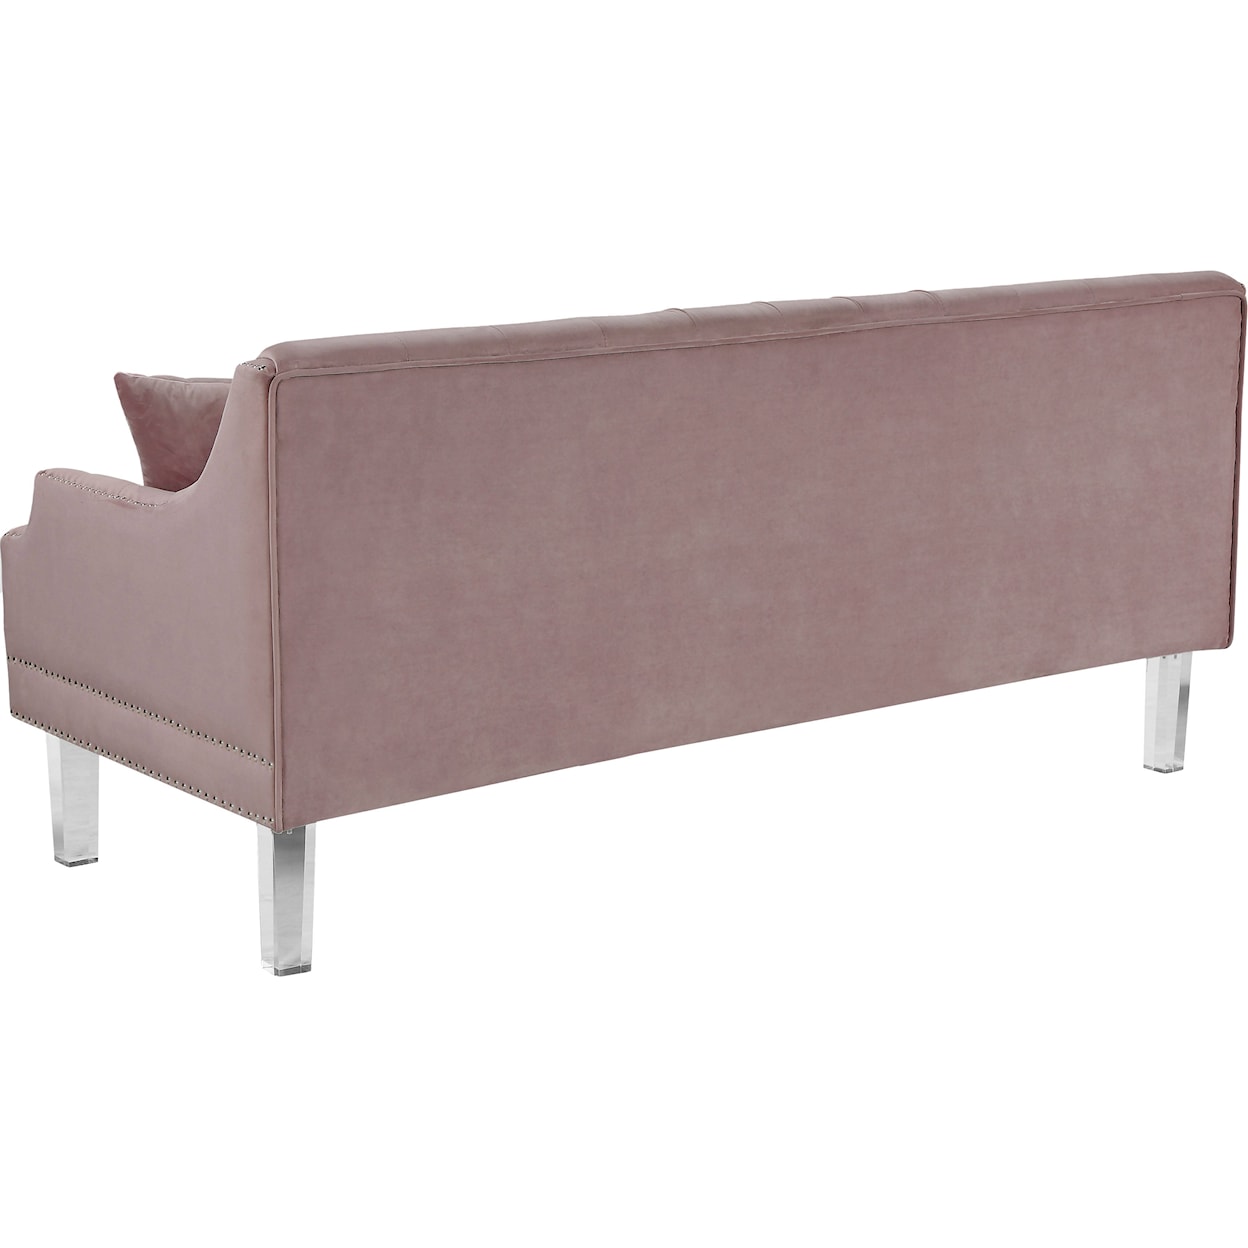 Meridian Furniture Roxy Sofa